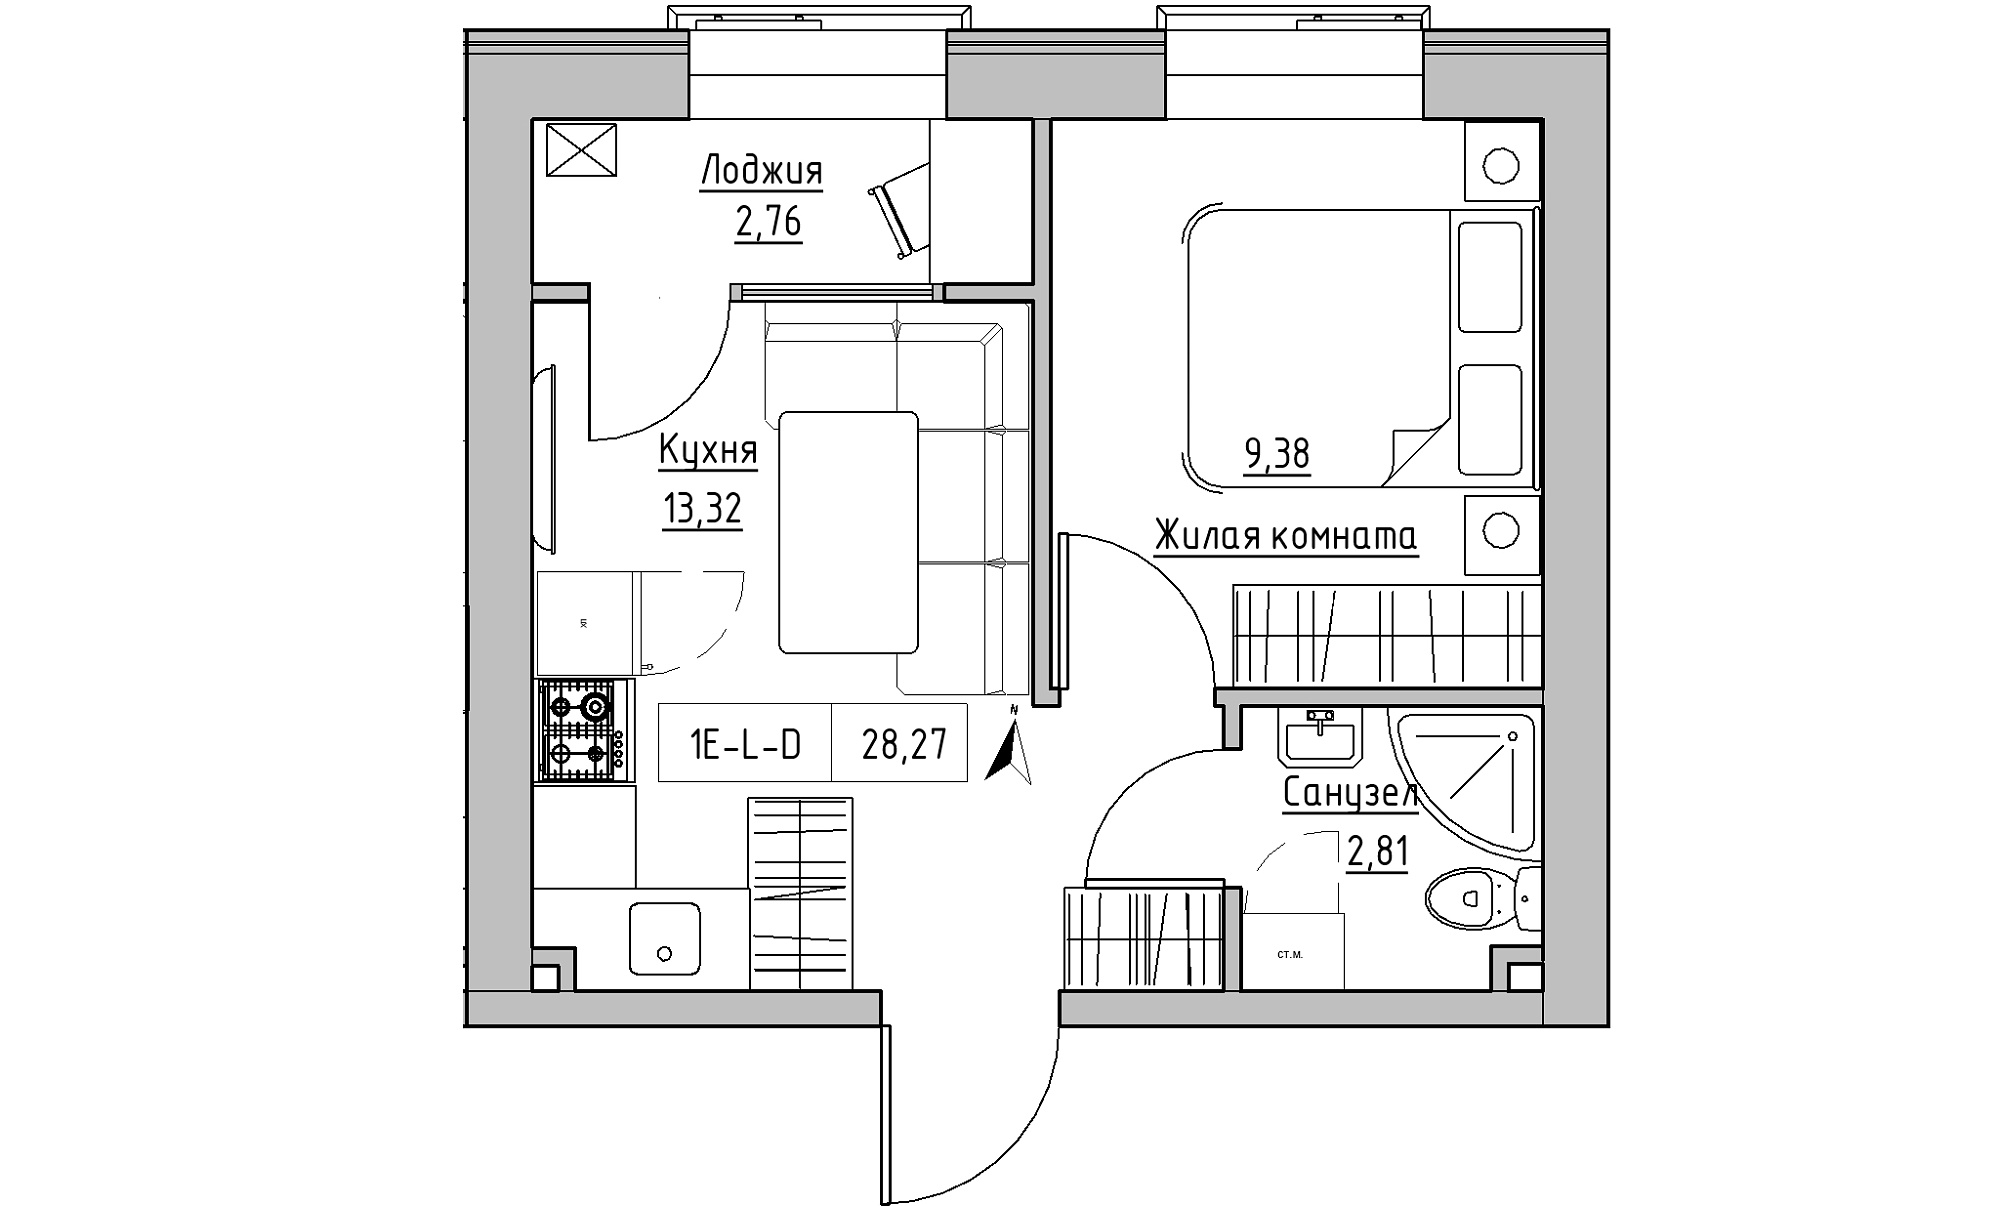 Планування 1-к квартира площею 28.27м2, KS-023-05/0018.